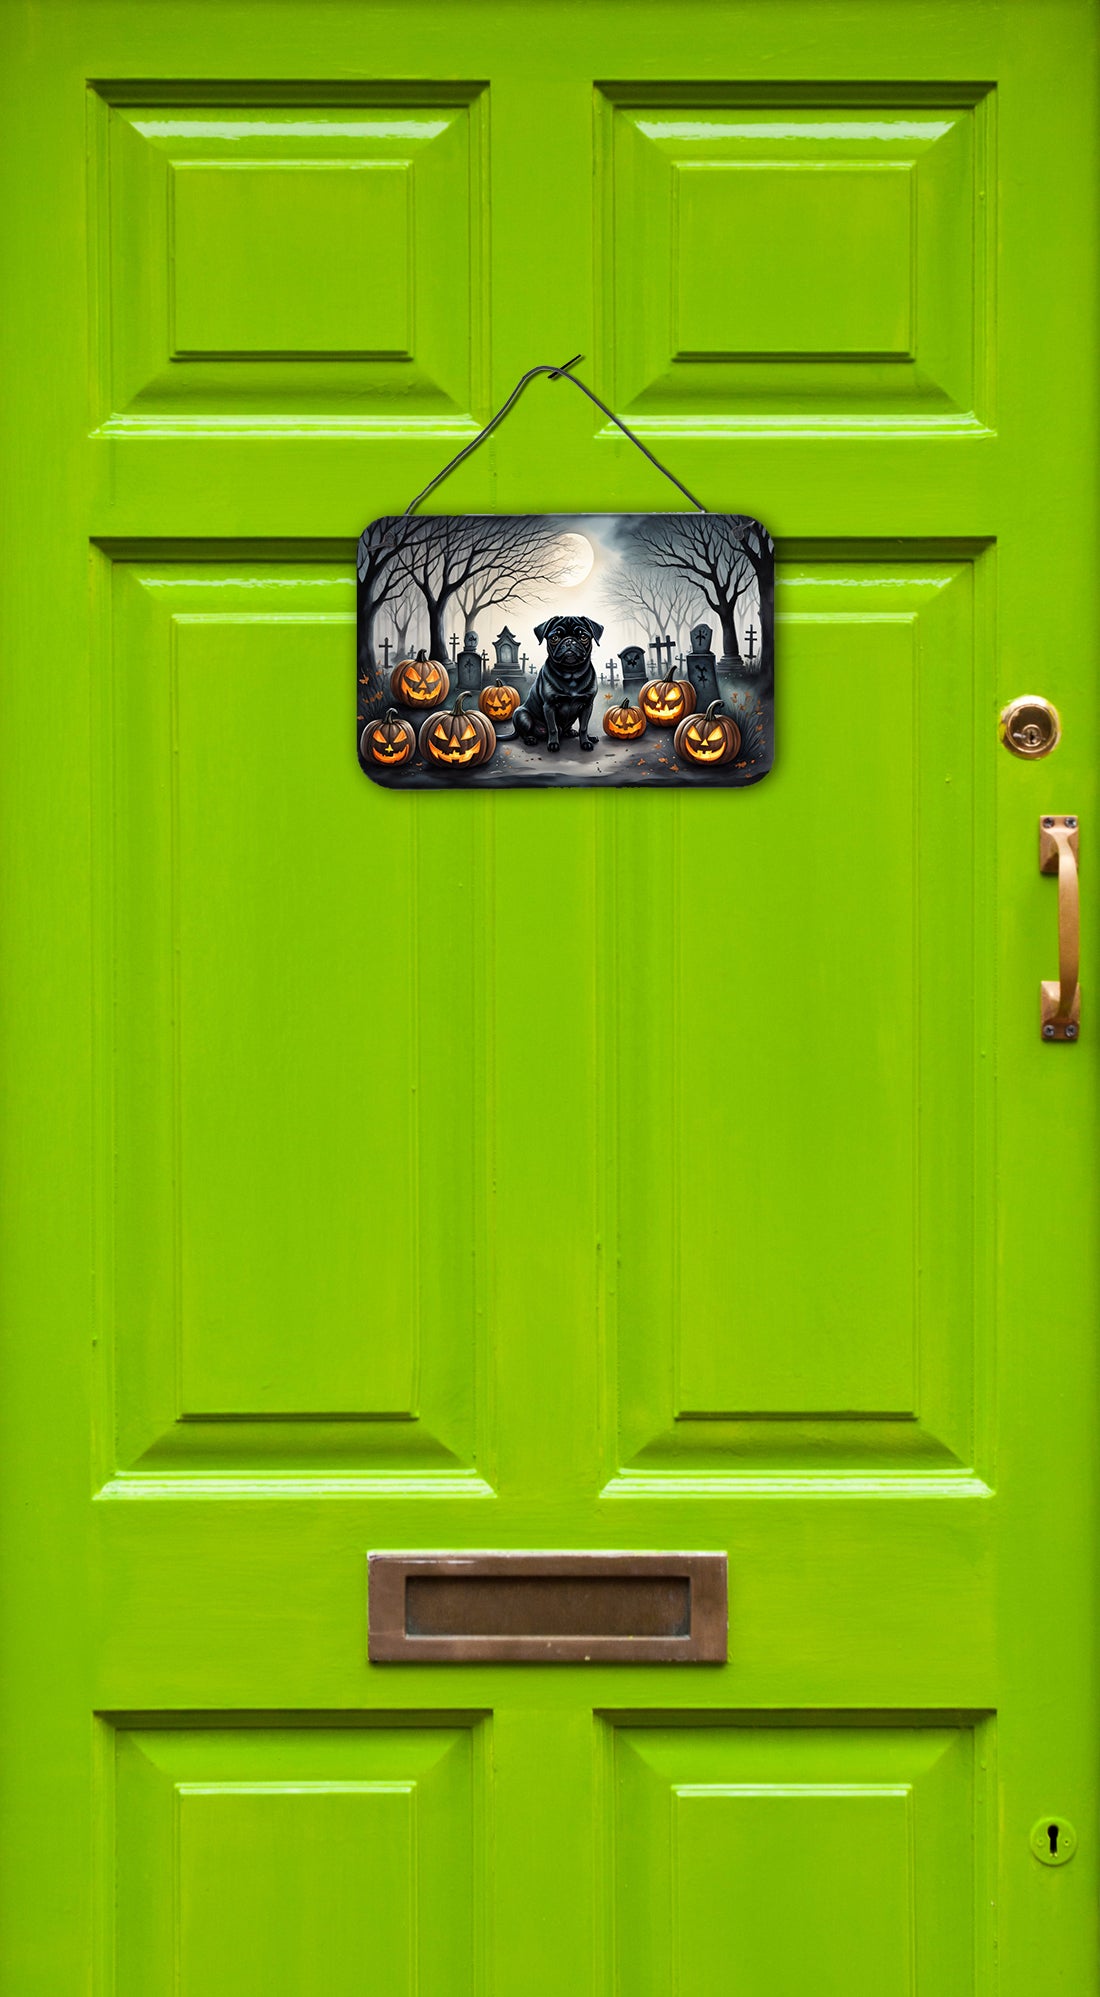 Black Pug Spooky Halloween Wall or Door Hanging Prints